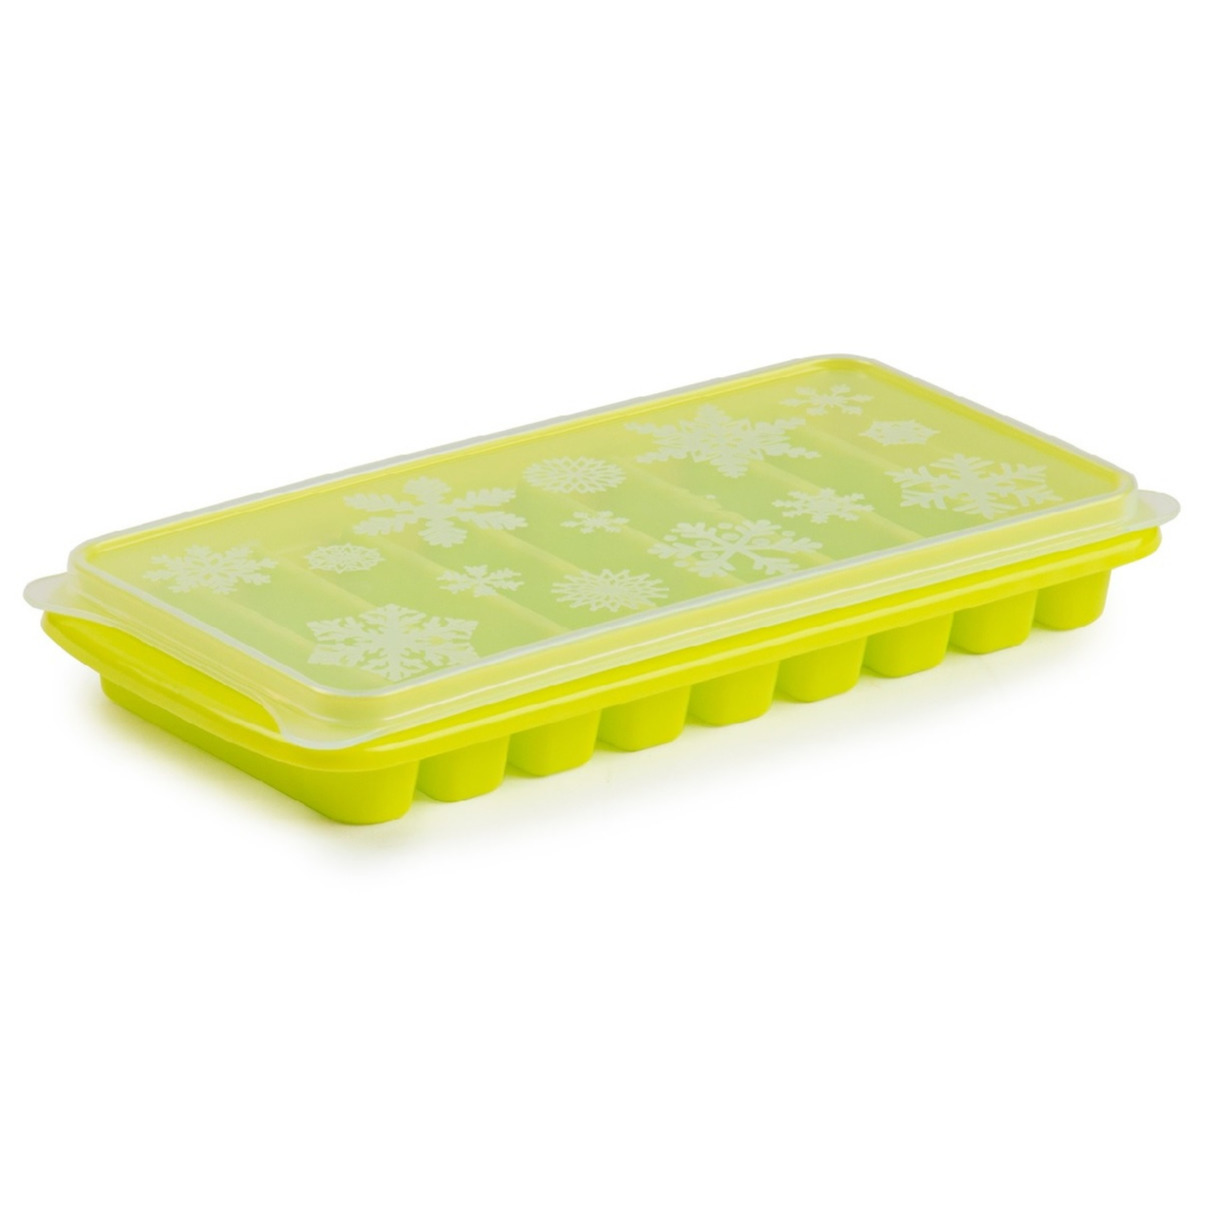 Tray met Flessenhals ijsblokjes/ijsklontjes staafjes vormpjes 10 vakjes kunststof groen